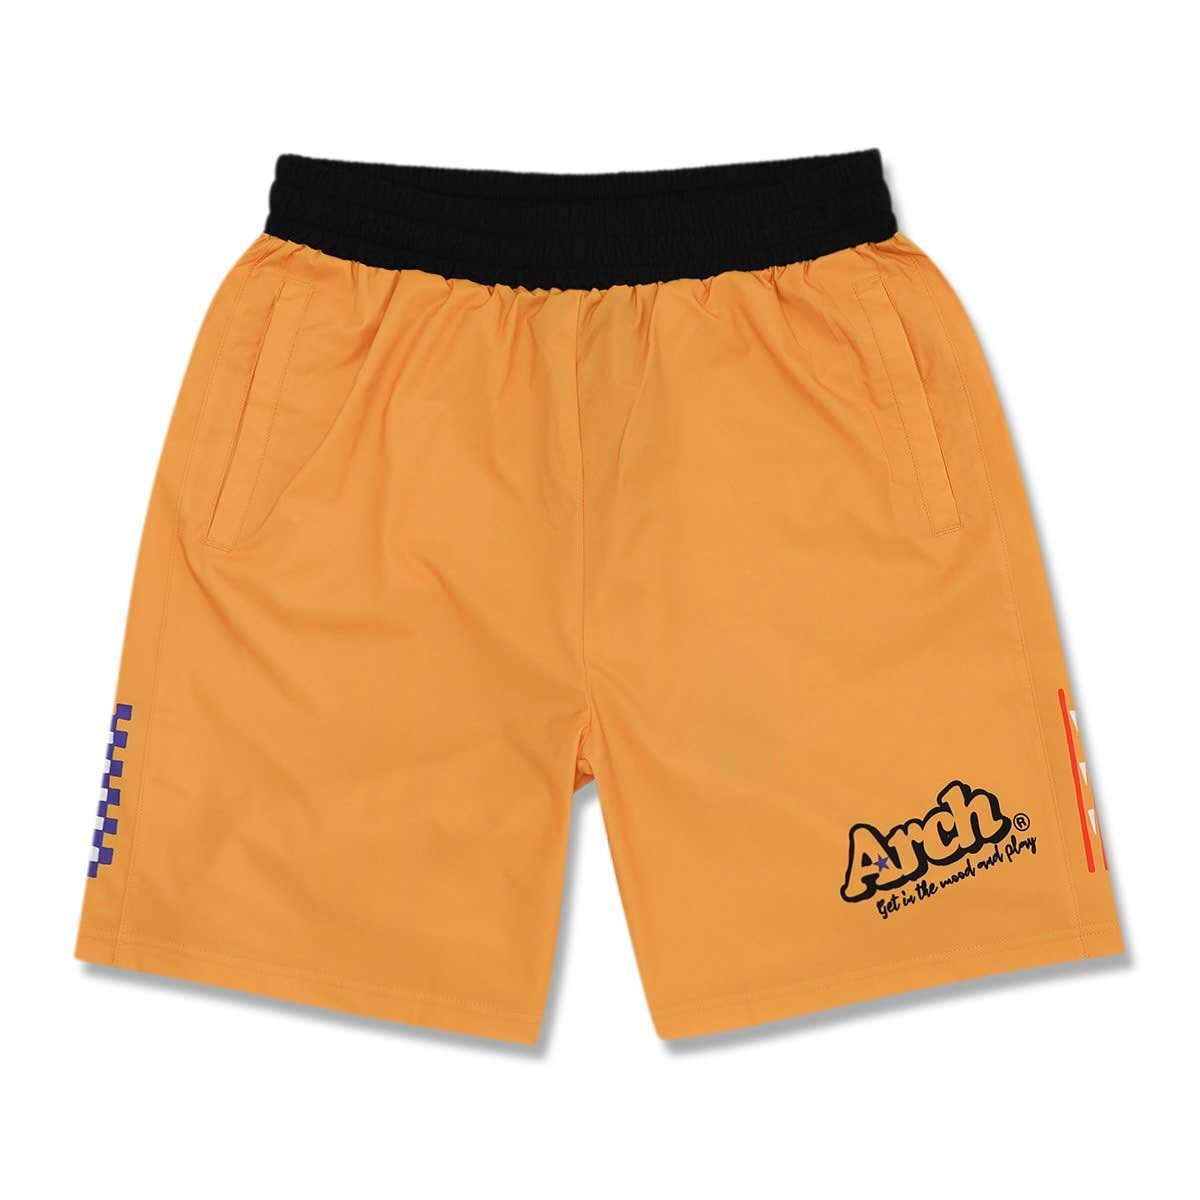 1559796-Arch/バスケットパンツ ショートパンツ Arch rough designed shorts/M